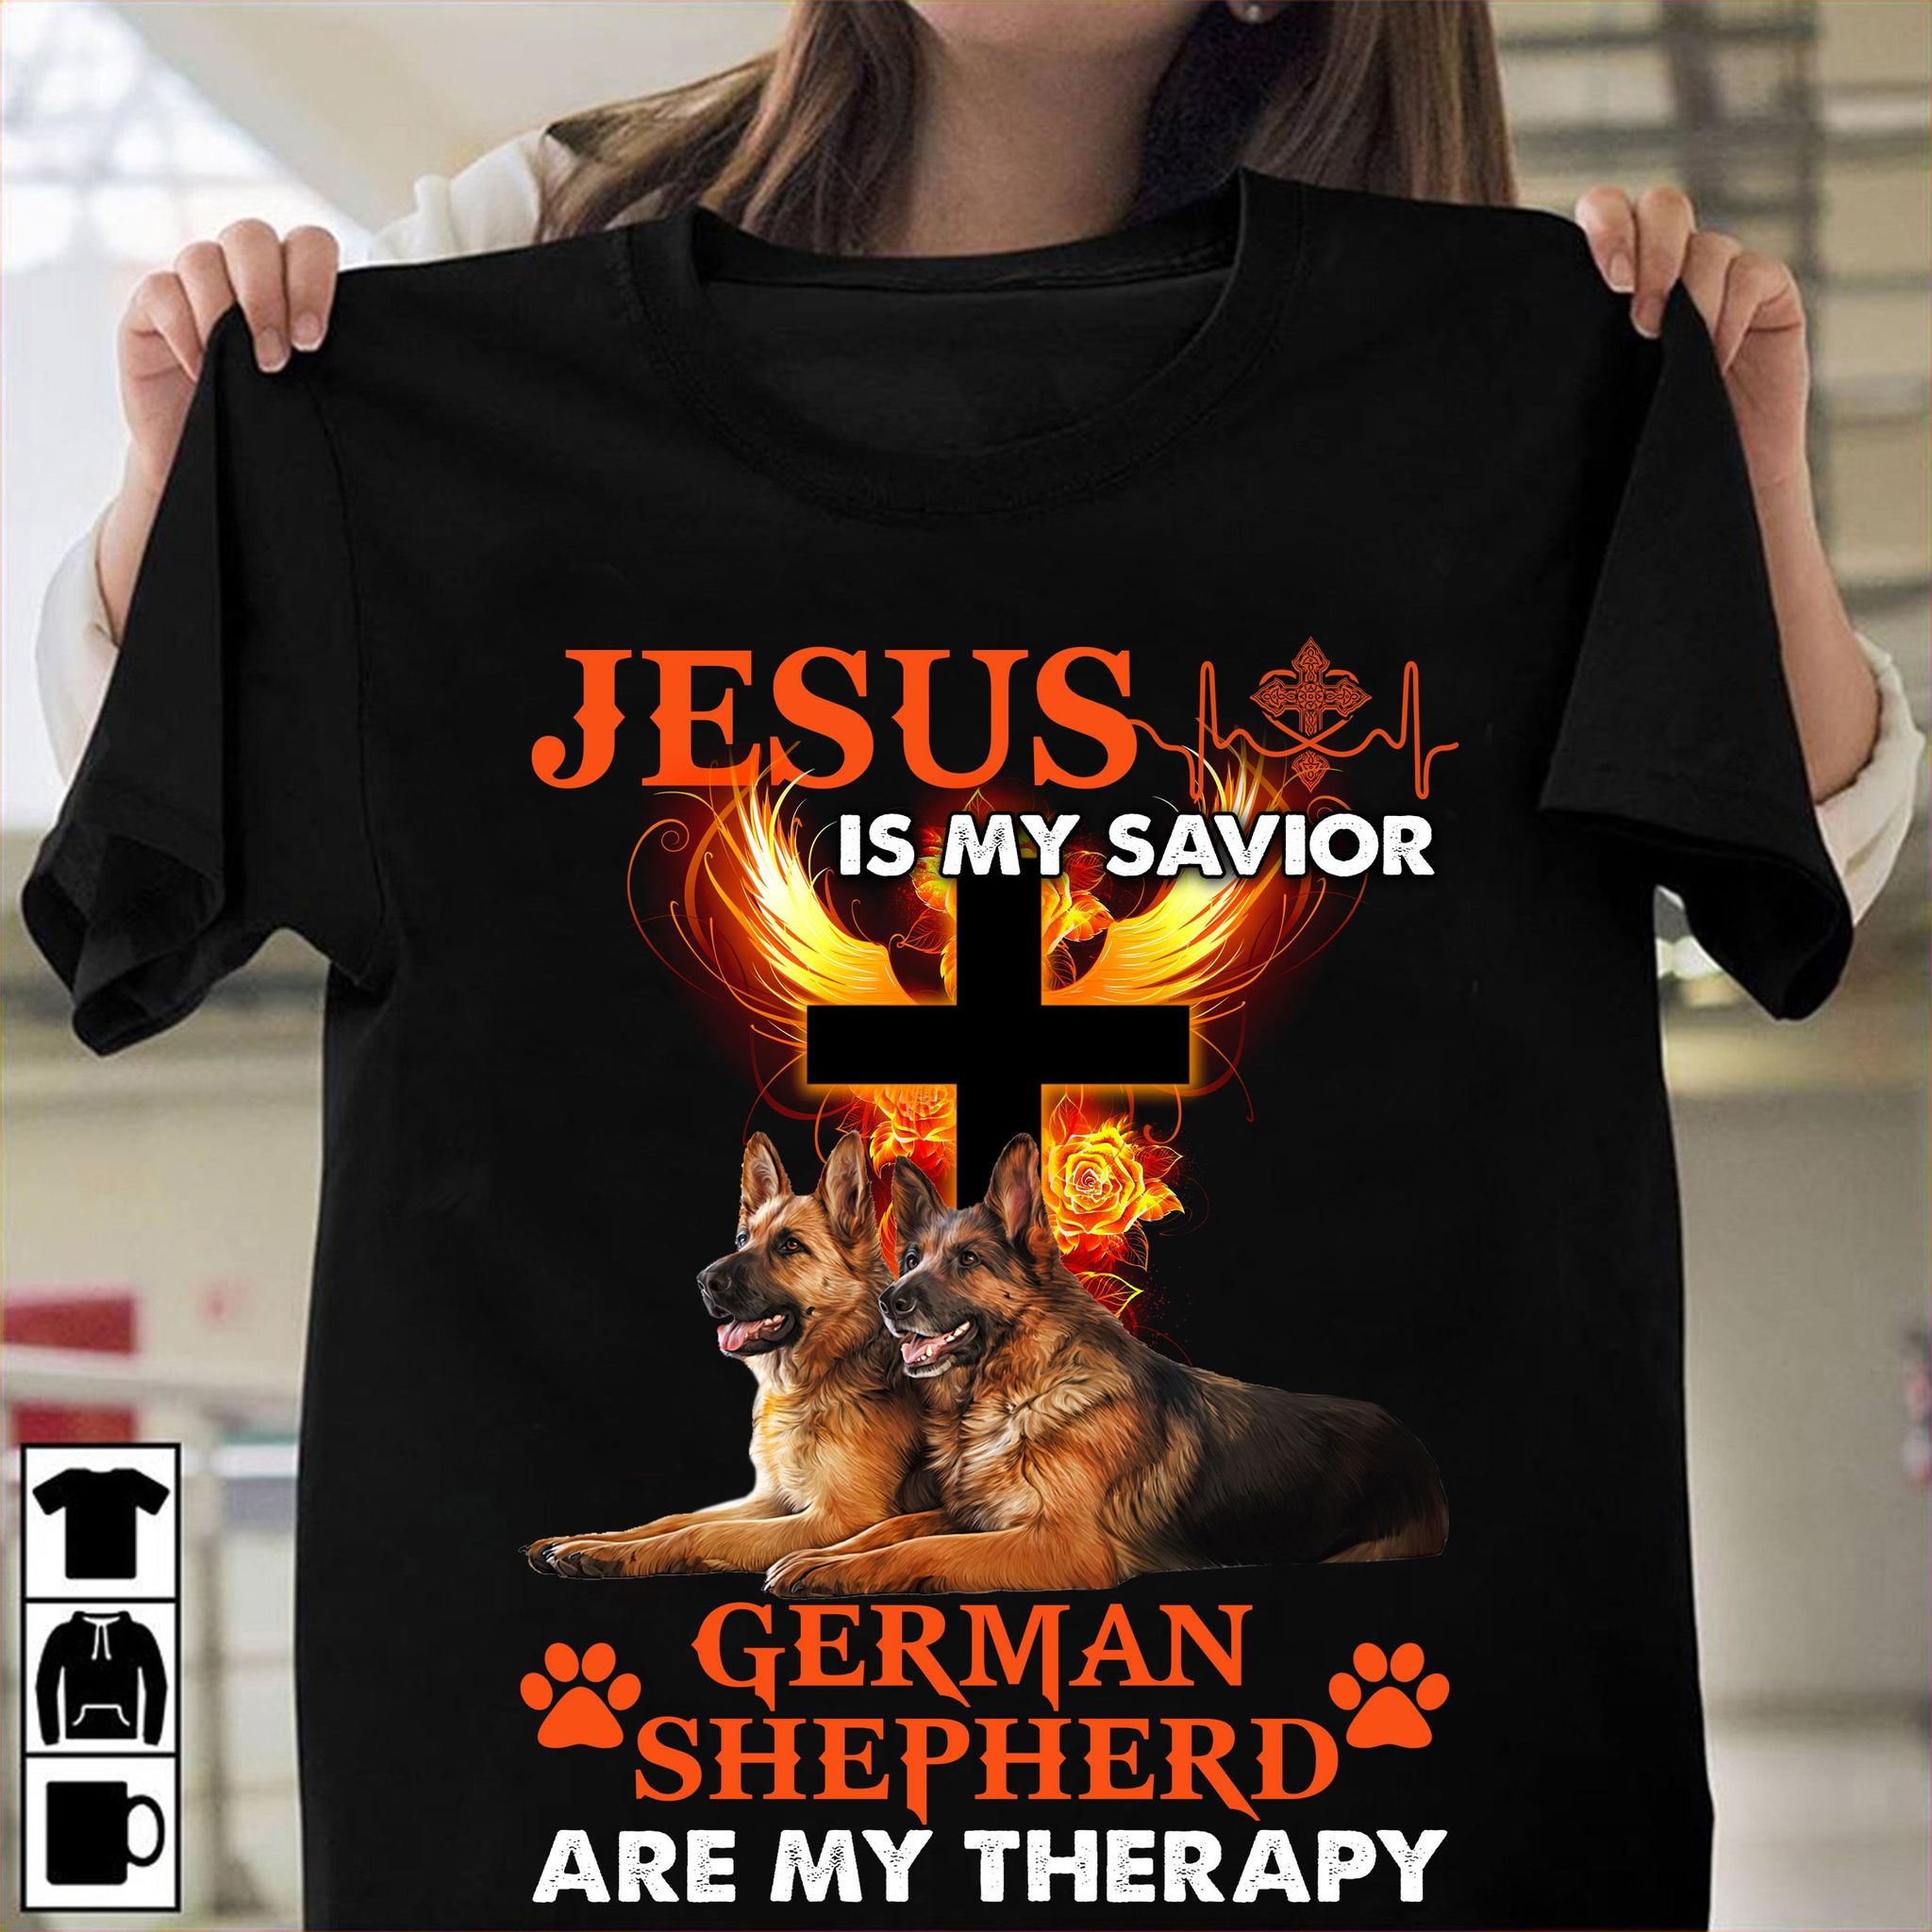 Jesus is my savior German shepherd are my therapy